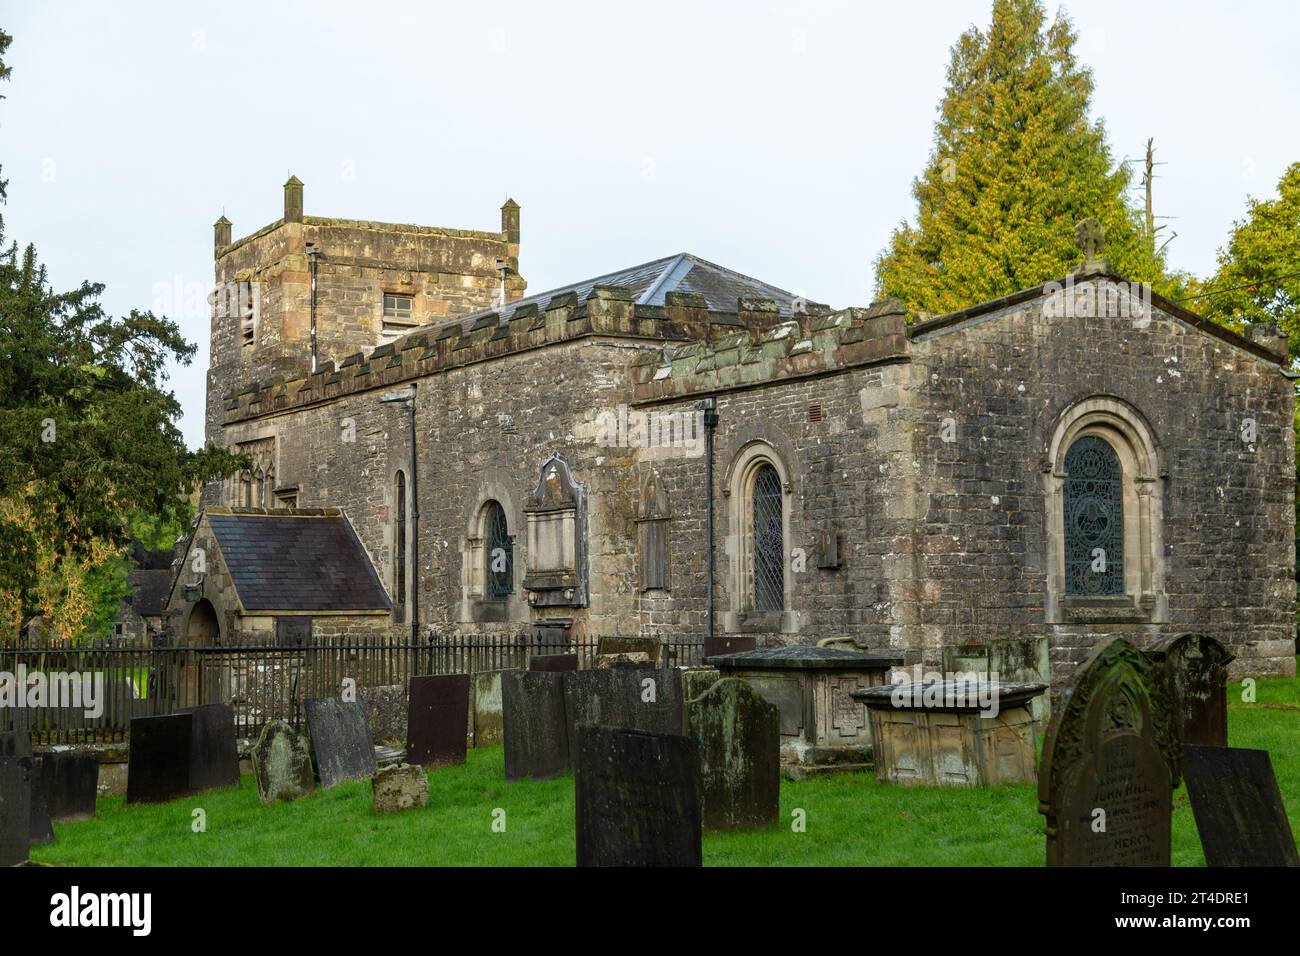 St Mary’s Church, Tissington, Derbyshire, England Stock Photo